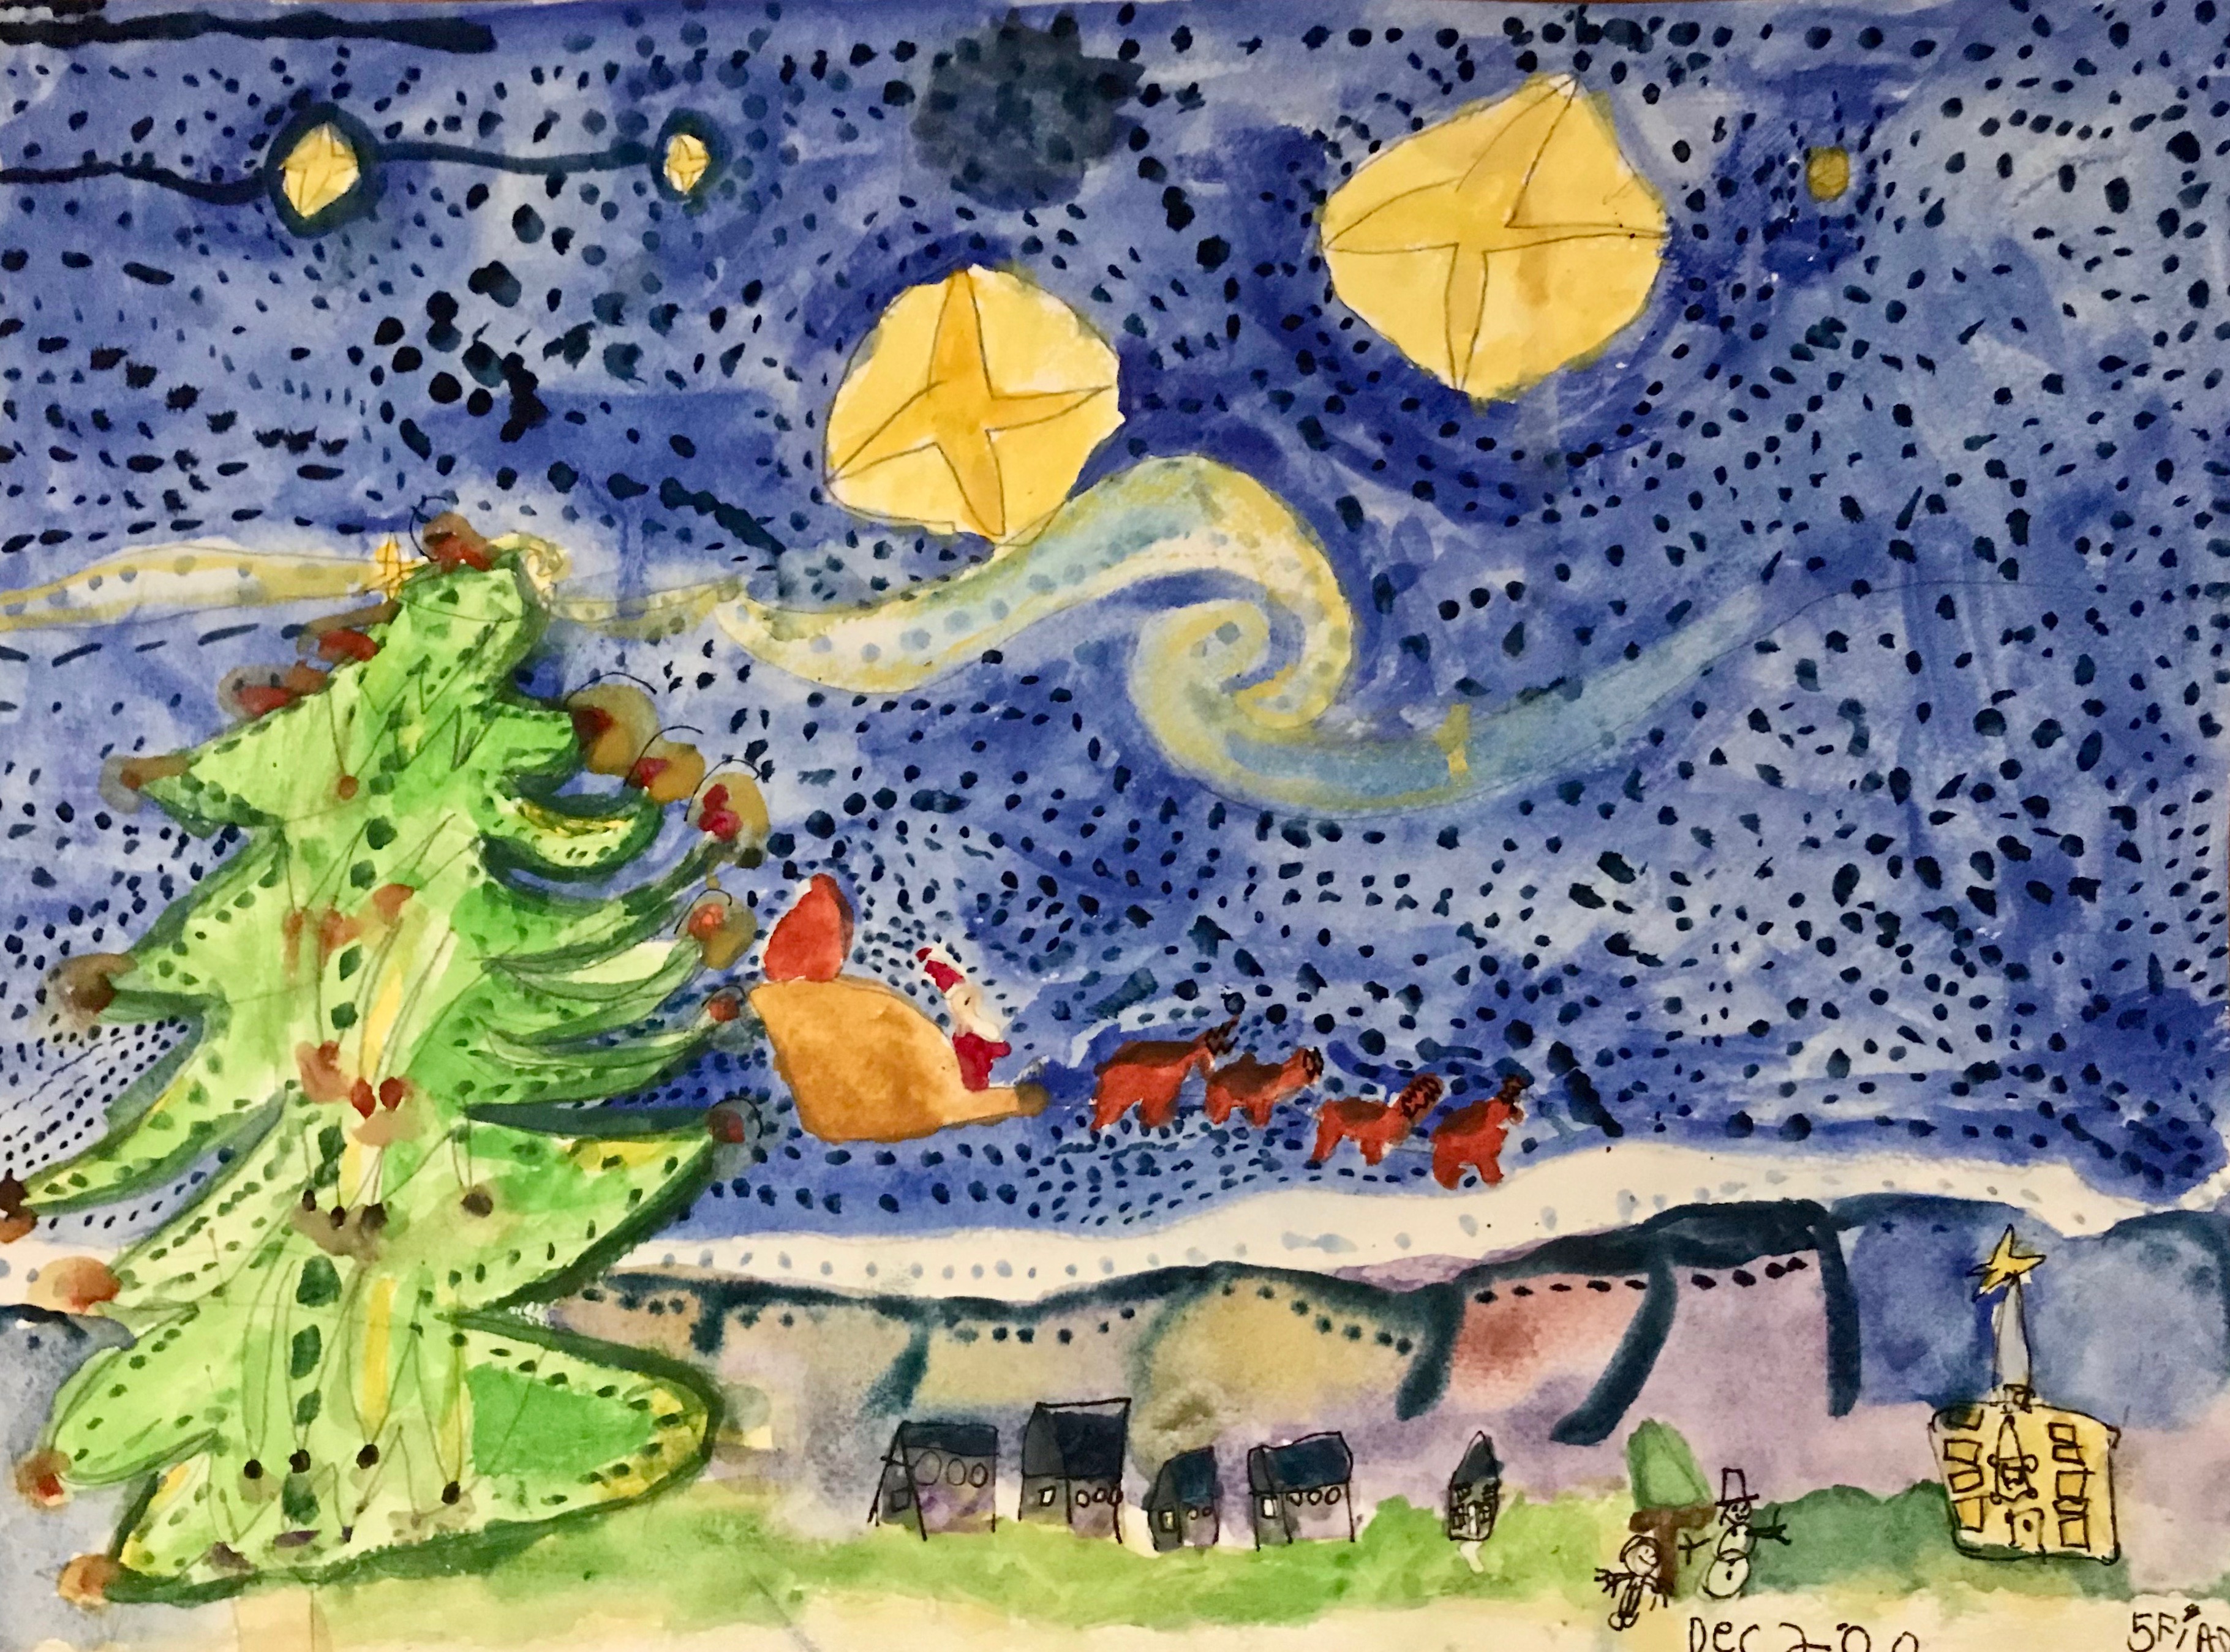 'Santa over Araglen' by Fiadh (5) from Cork